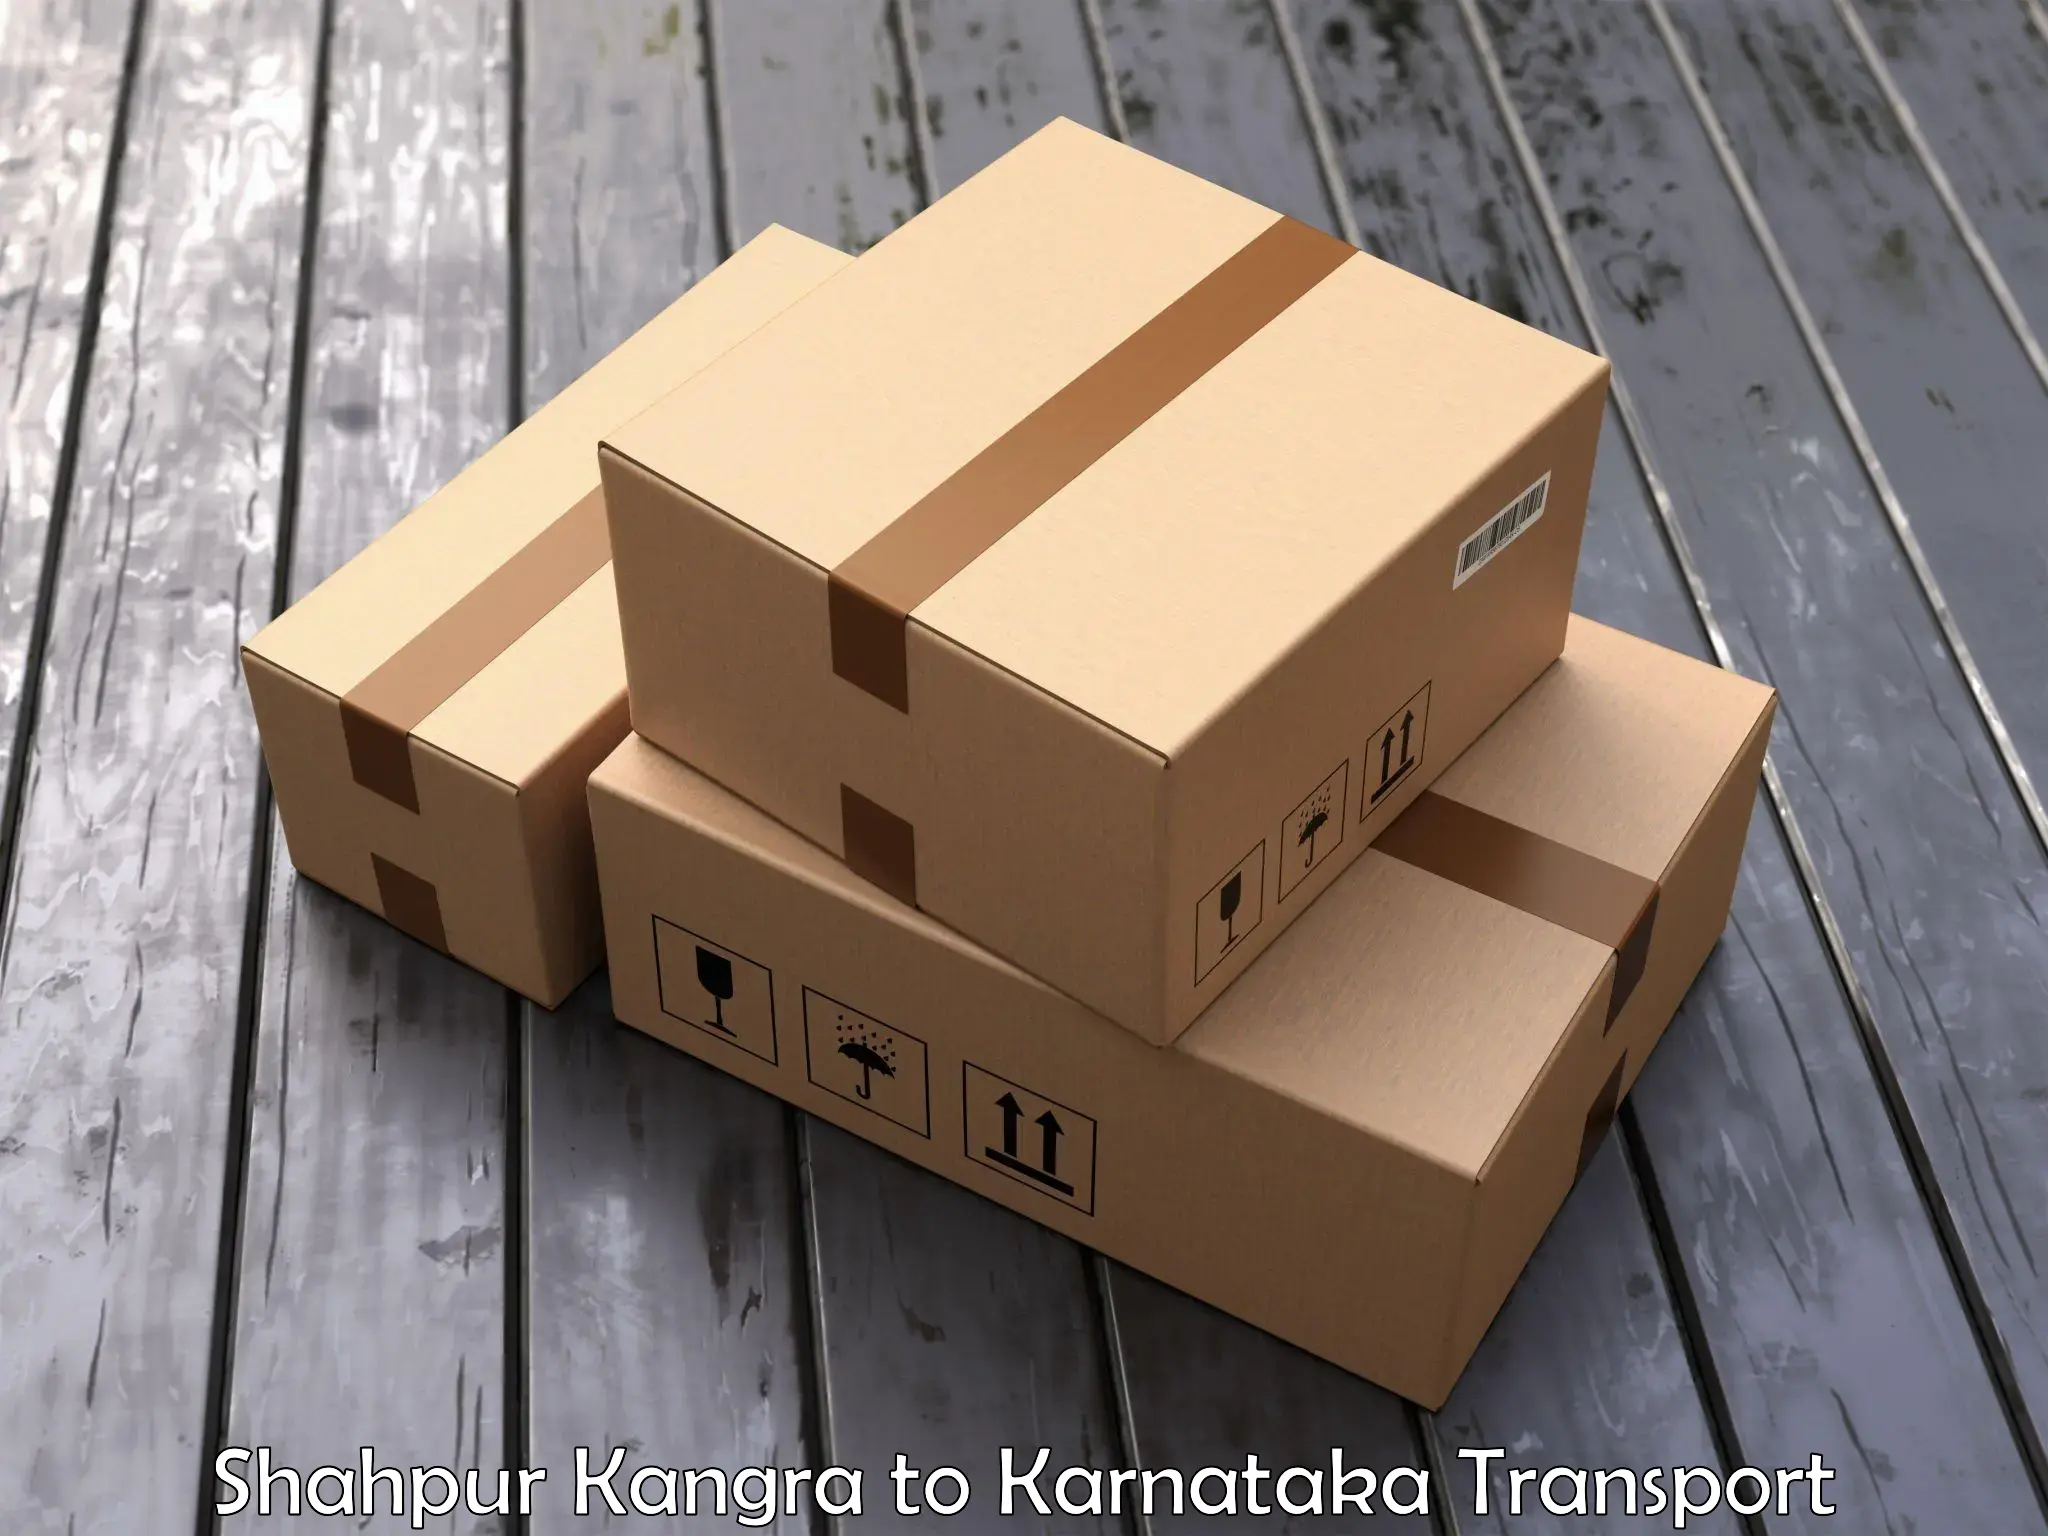 Transportation services Shahpur Kangra to Karnataka